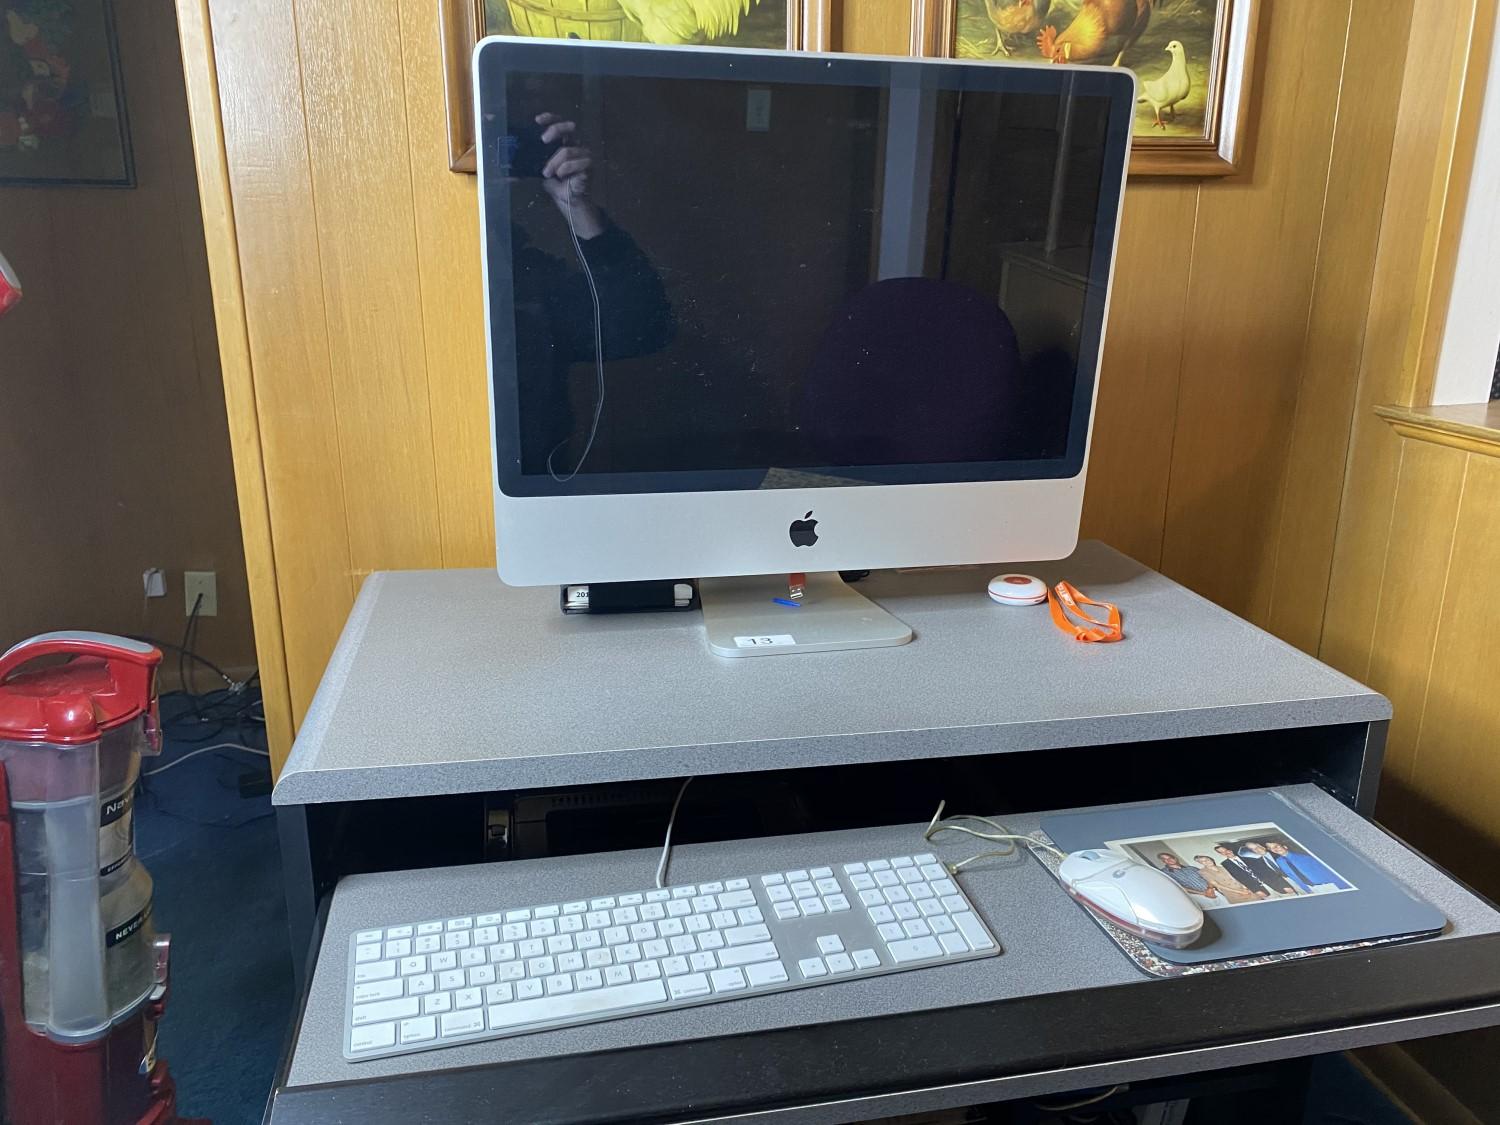 Apple iMac Computer Model A1311, MC508LL/A